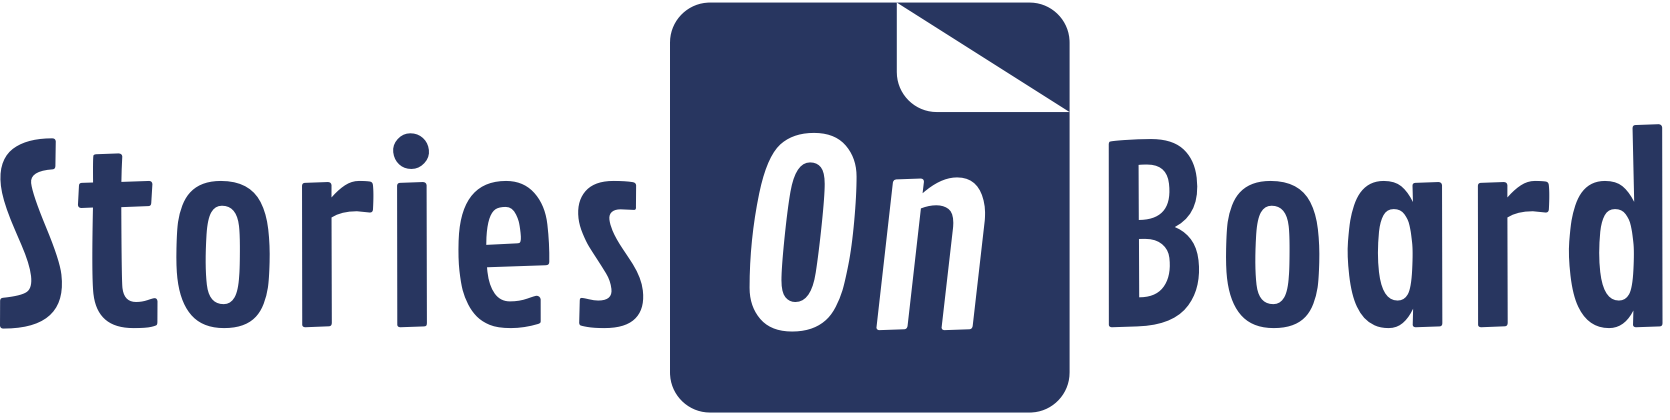 storiesonbard logo full